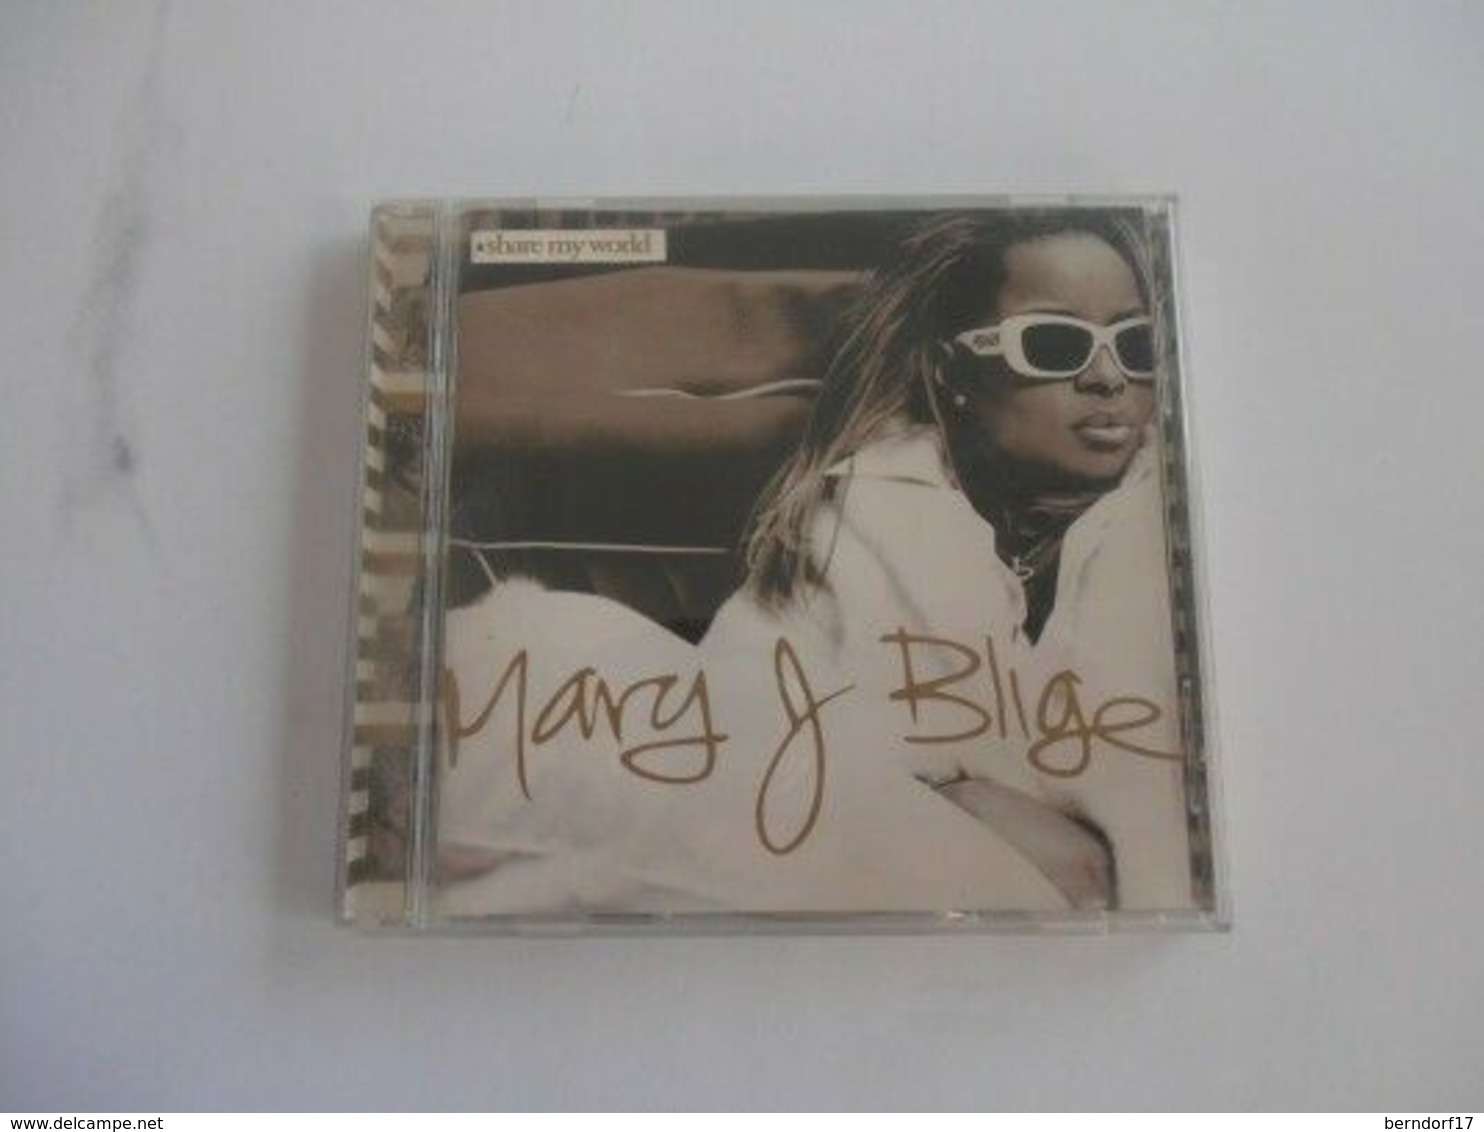 Mary L. Blige - Share My World - CD - Hard Rock En Metal